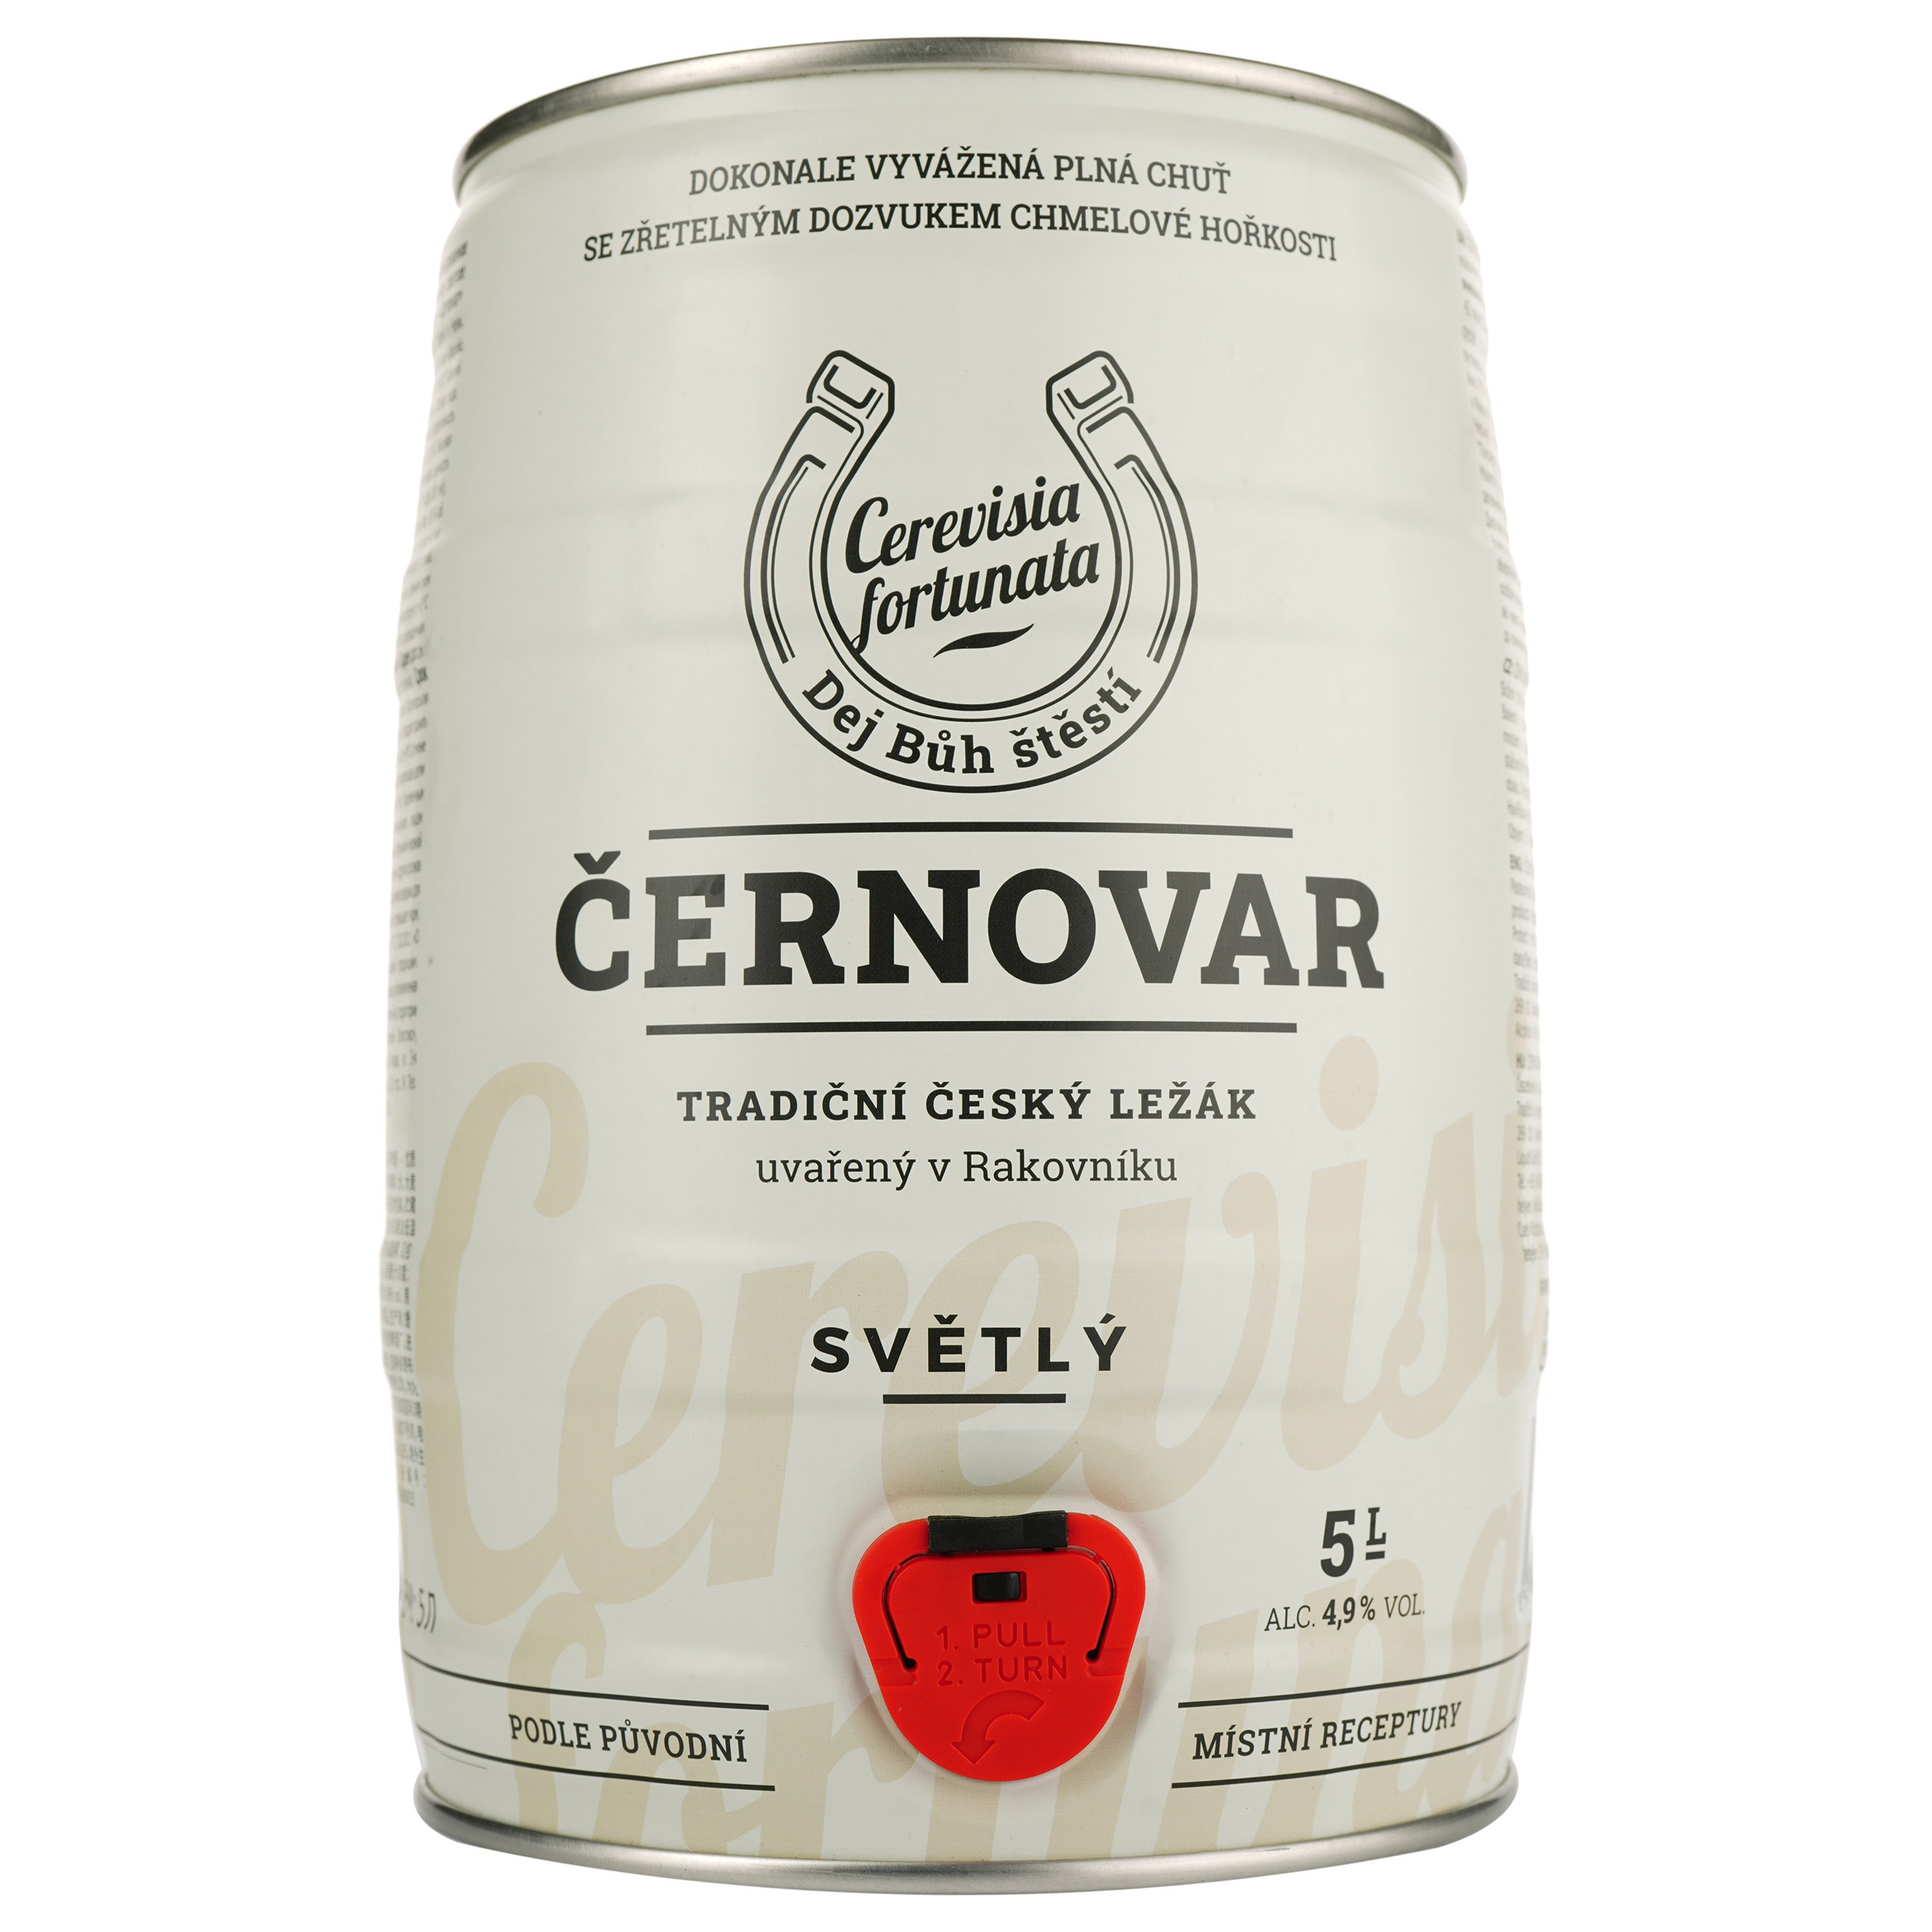 Пиво Cernovar світле, 4.9%, з/б, 5 л - фото 1